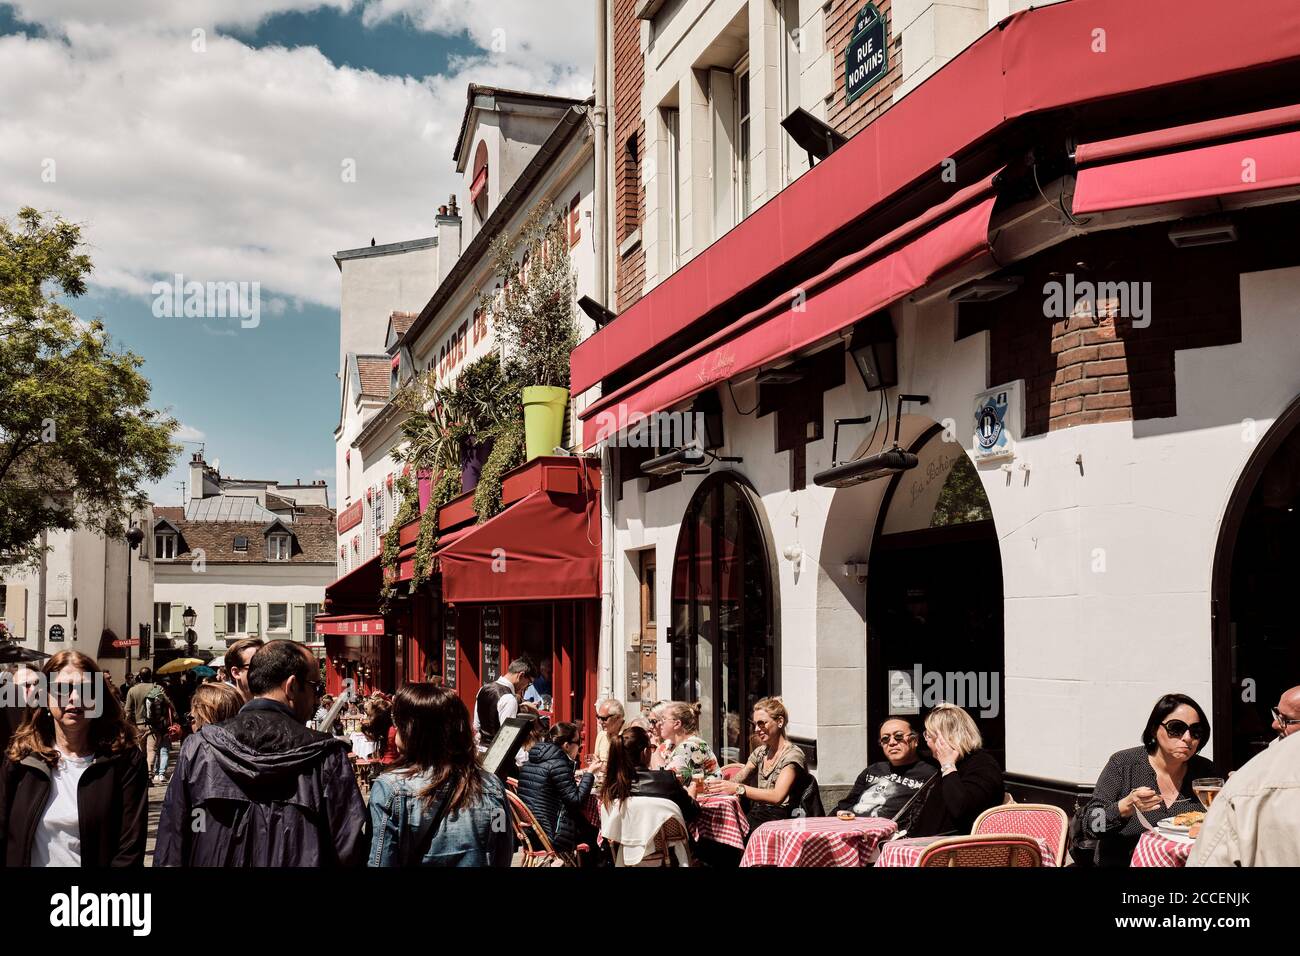 Europa, Frankreich, Paris, Montmartre, Sacre Coeur, viele Touristen auf den Straßen, Street Cafe scence, Stockfoto